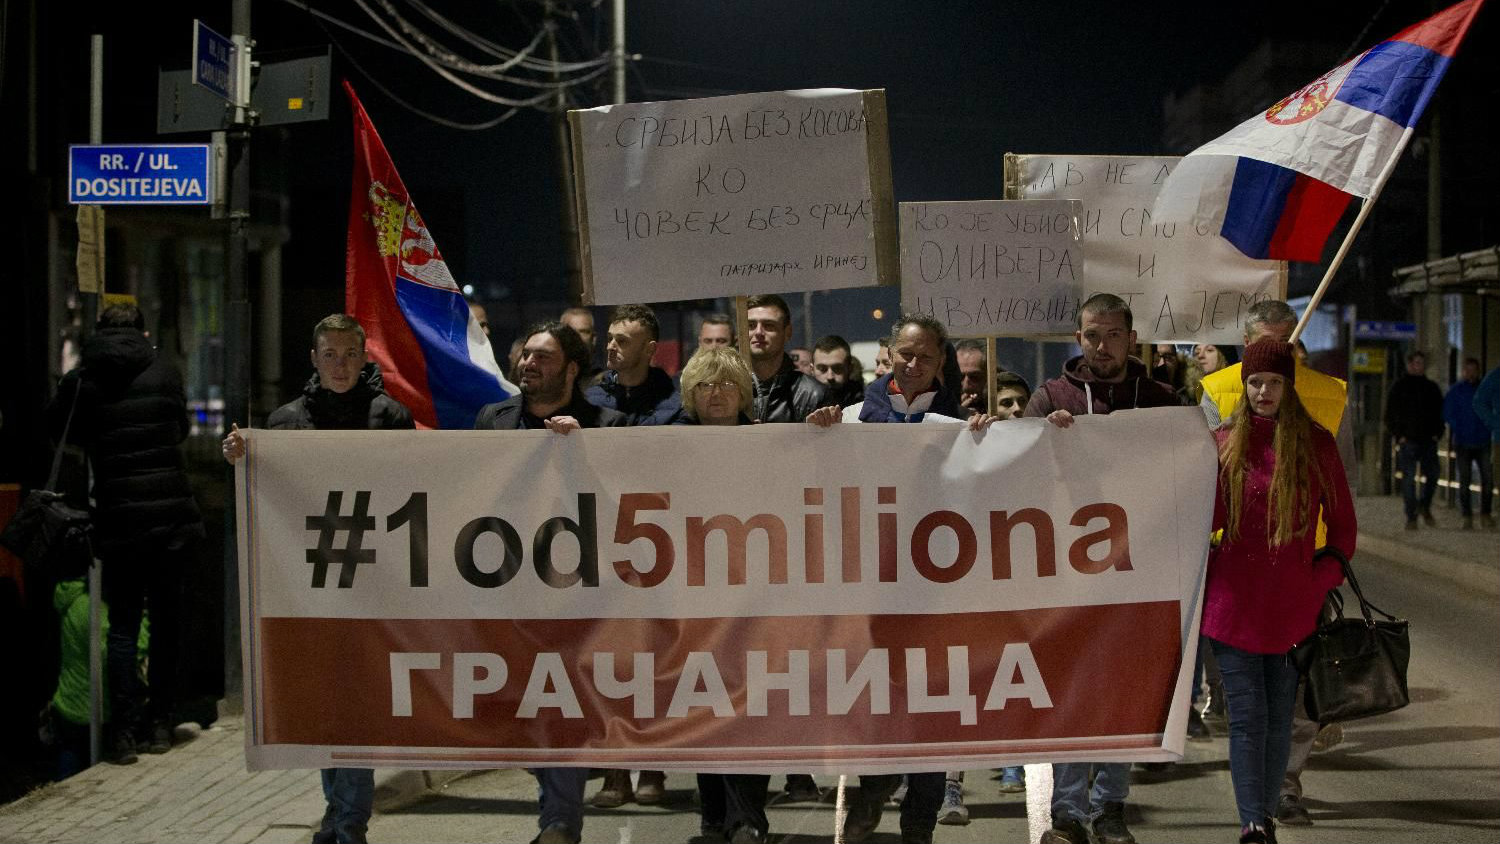 Protest "1 od 5 miliona" u Gračanici: Ibar nije granica 1